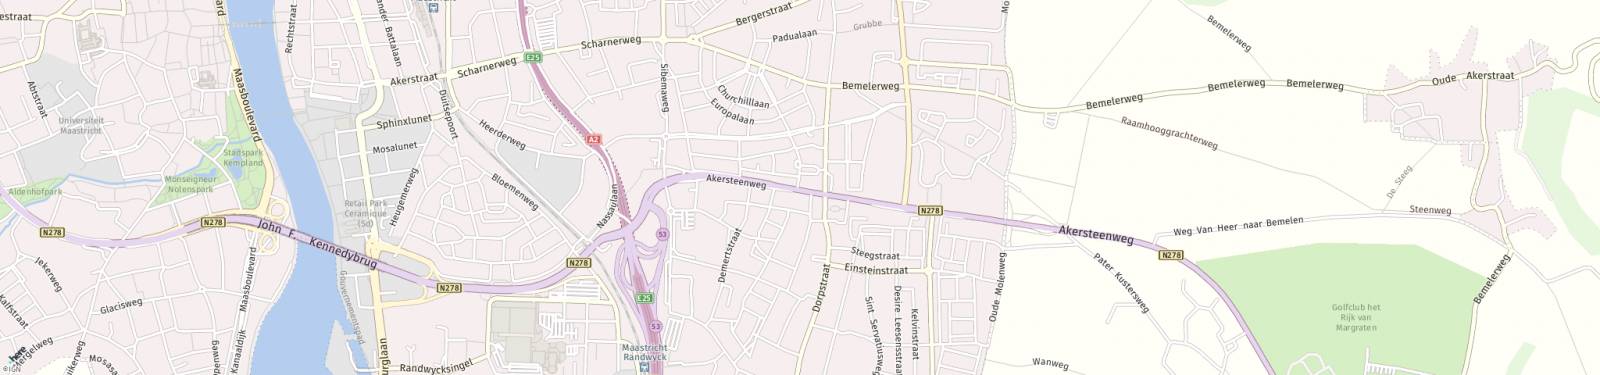 Kaart met locatie Appartement Akersteenweg